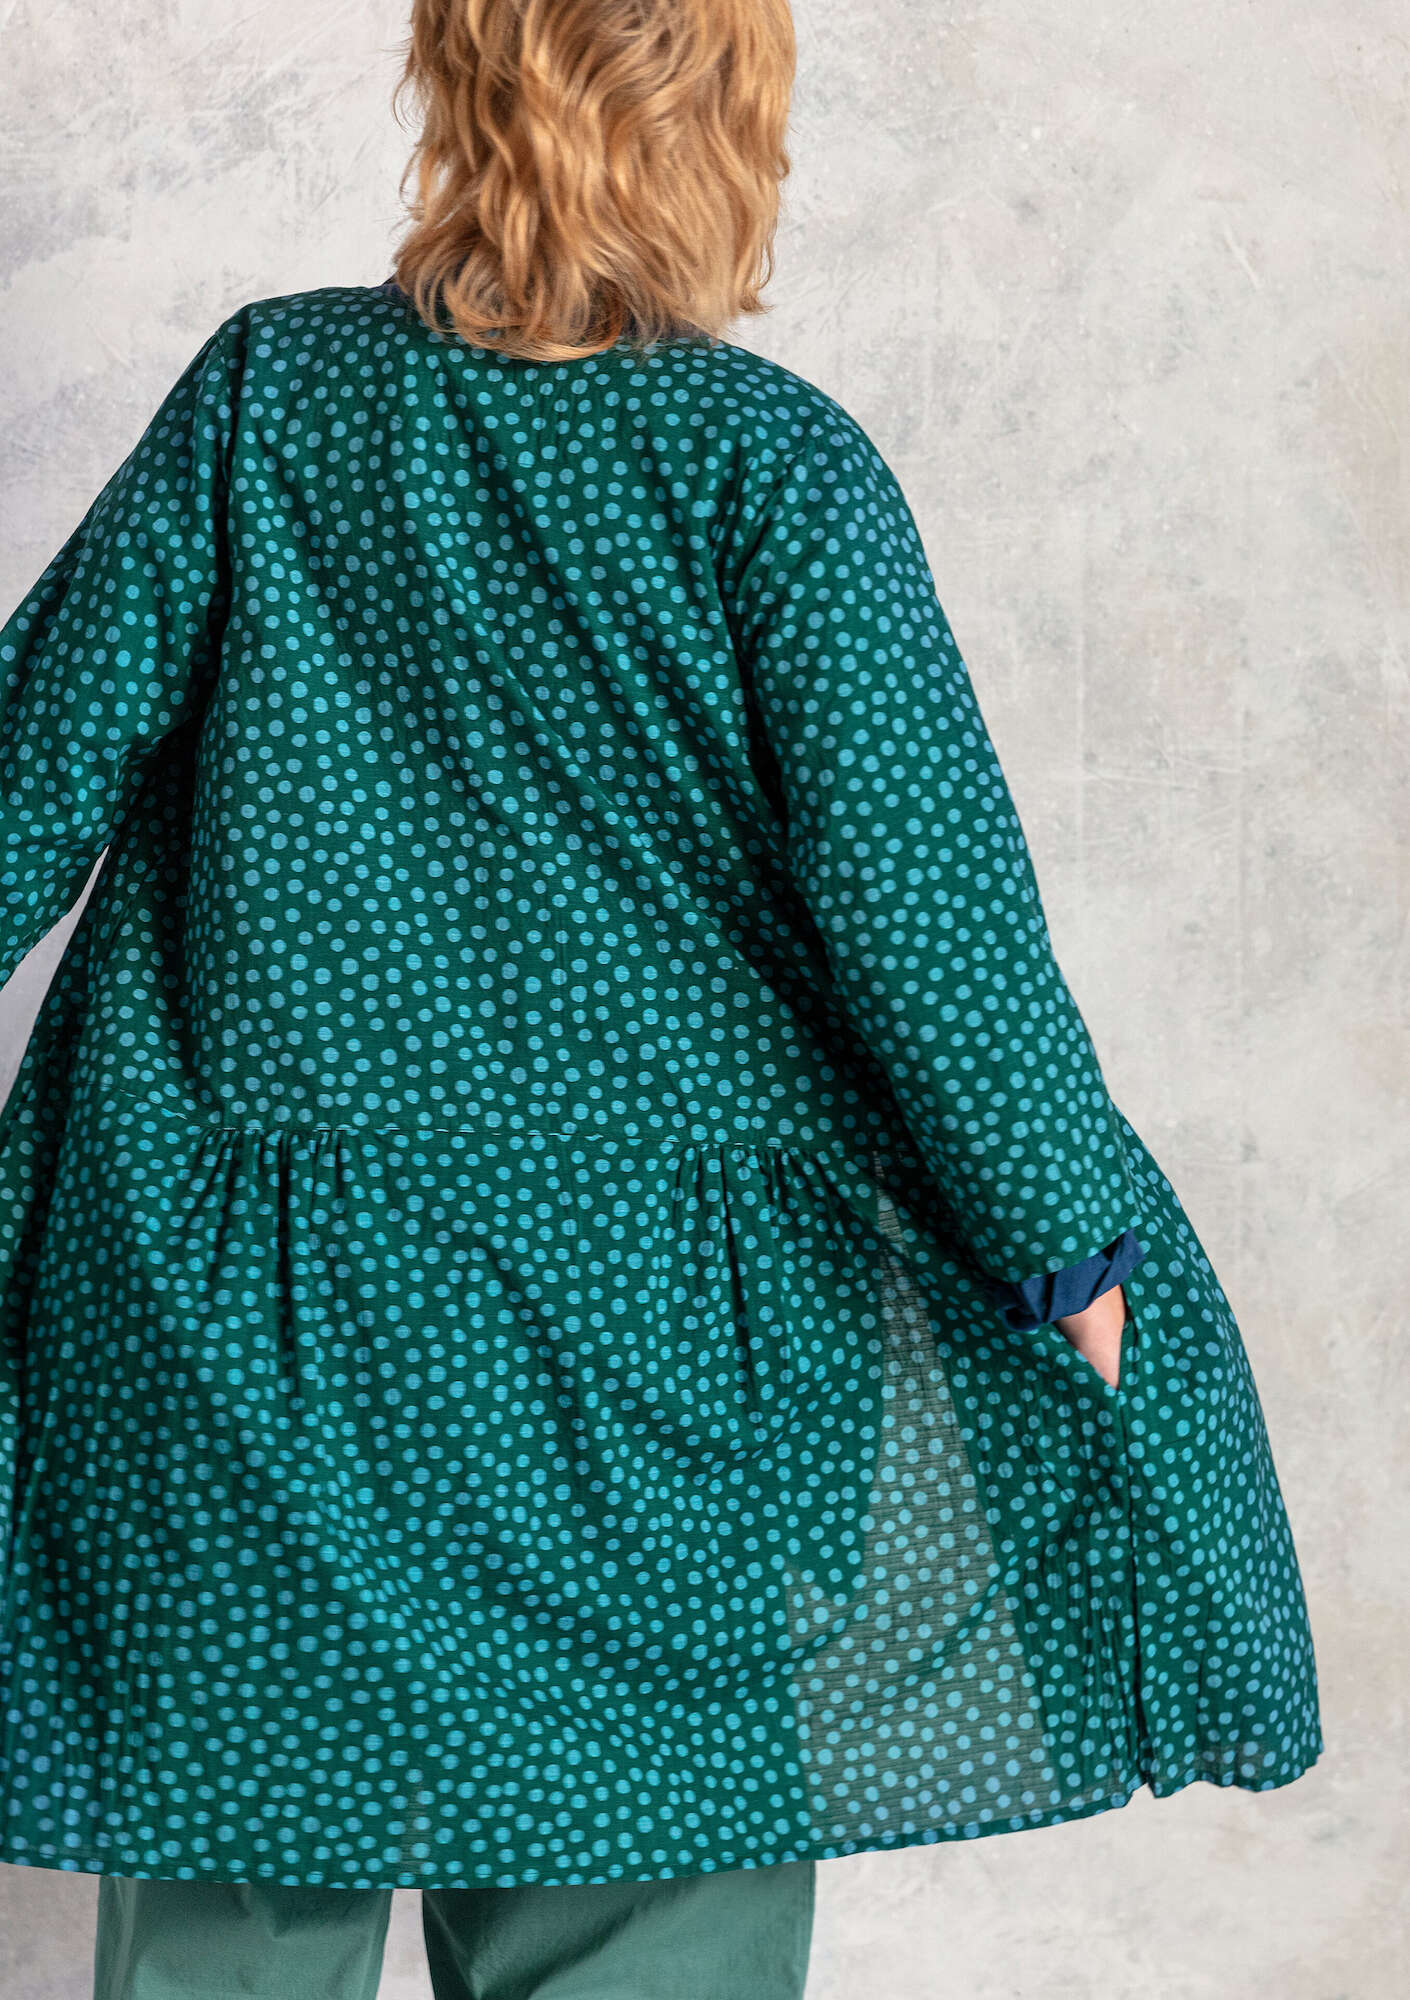 Vevd kjole «Alice» i økologisk bomull mørk grønn/mønstret